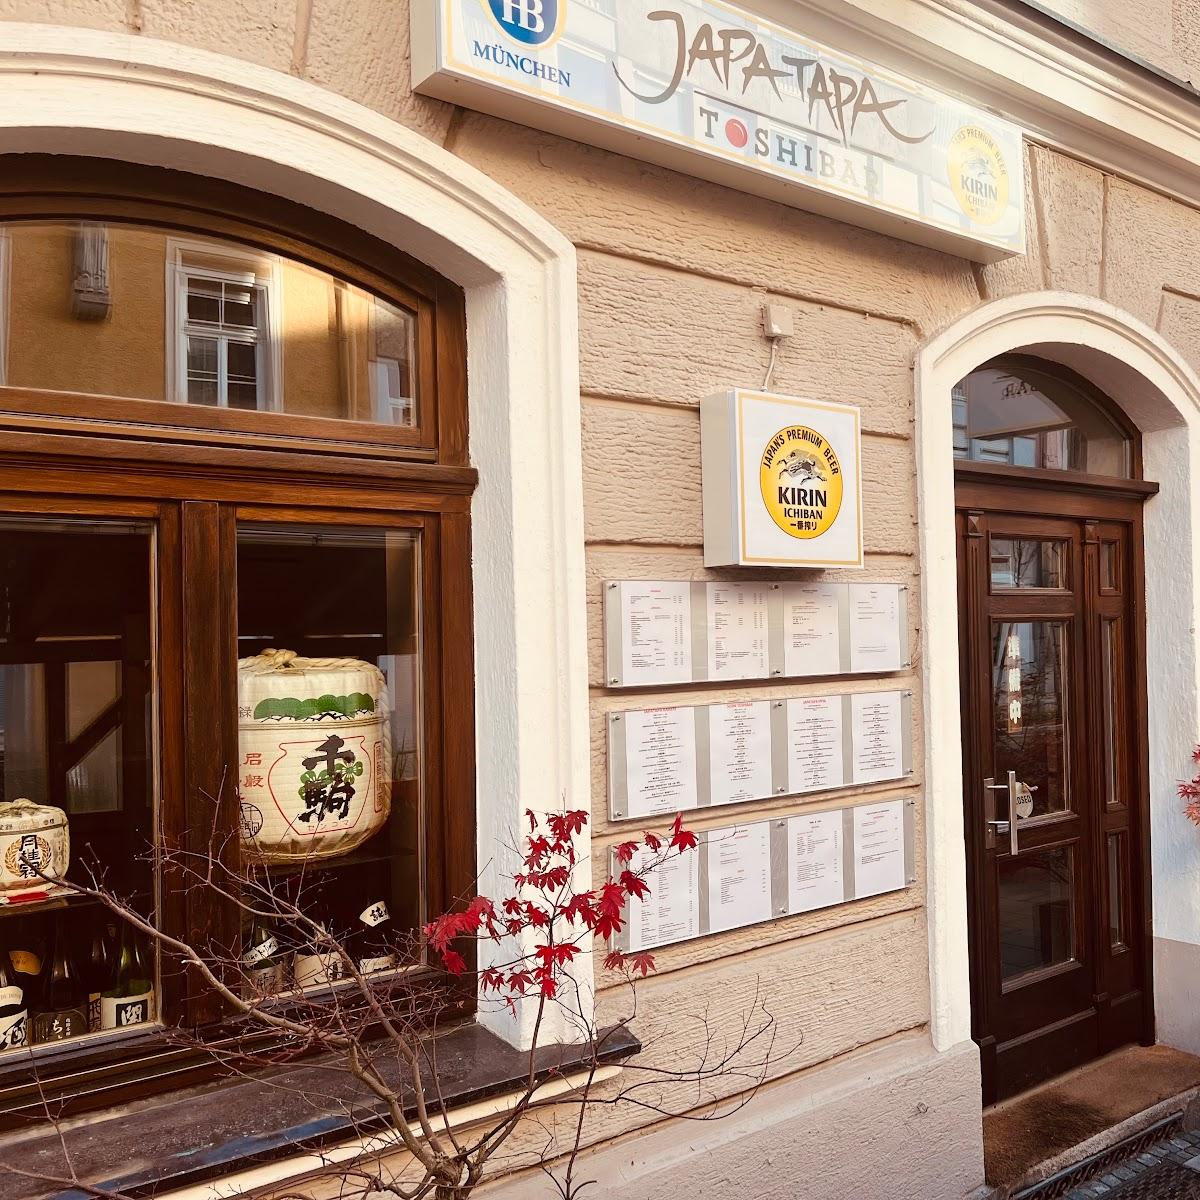 Restaurant "JAPATAPA TOSHIBAR" in München